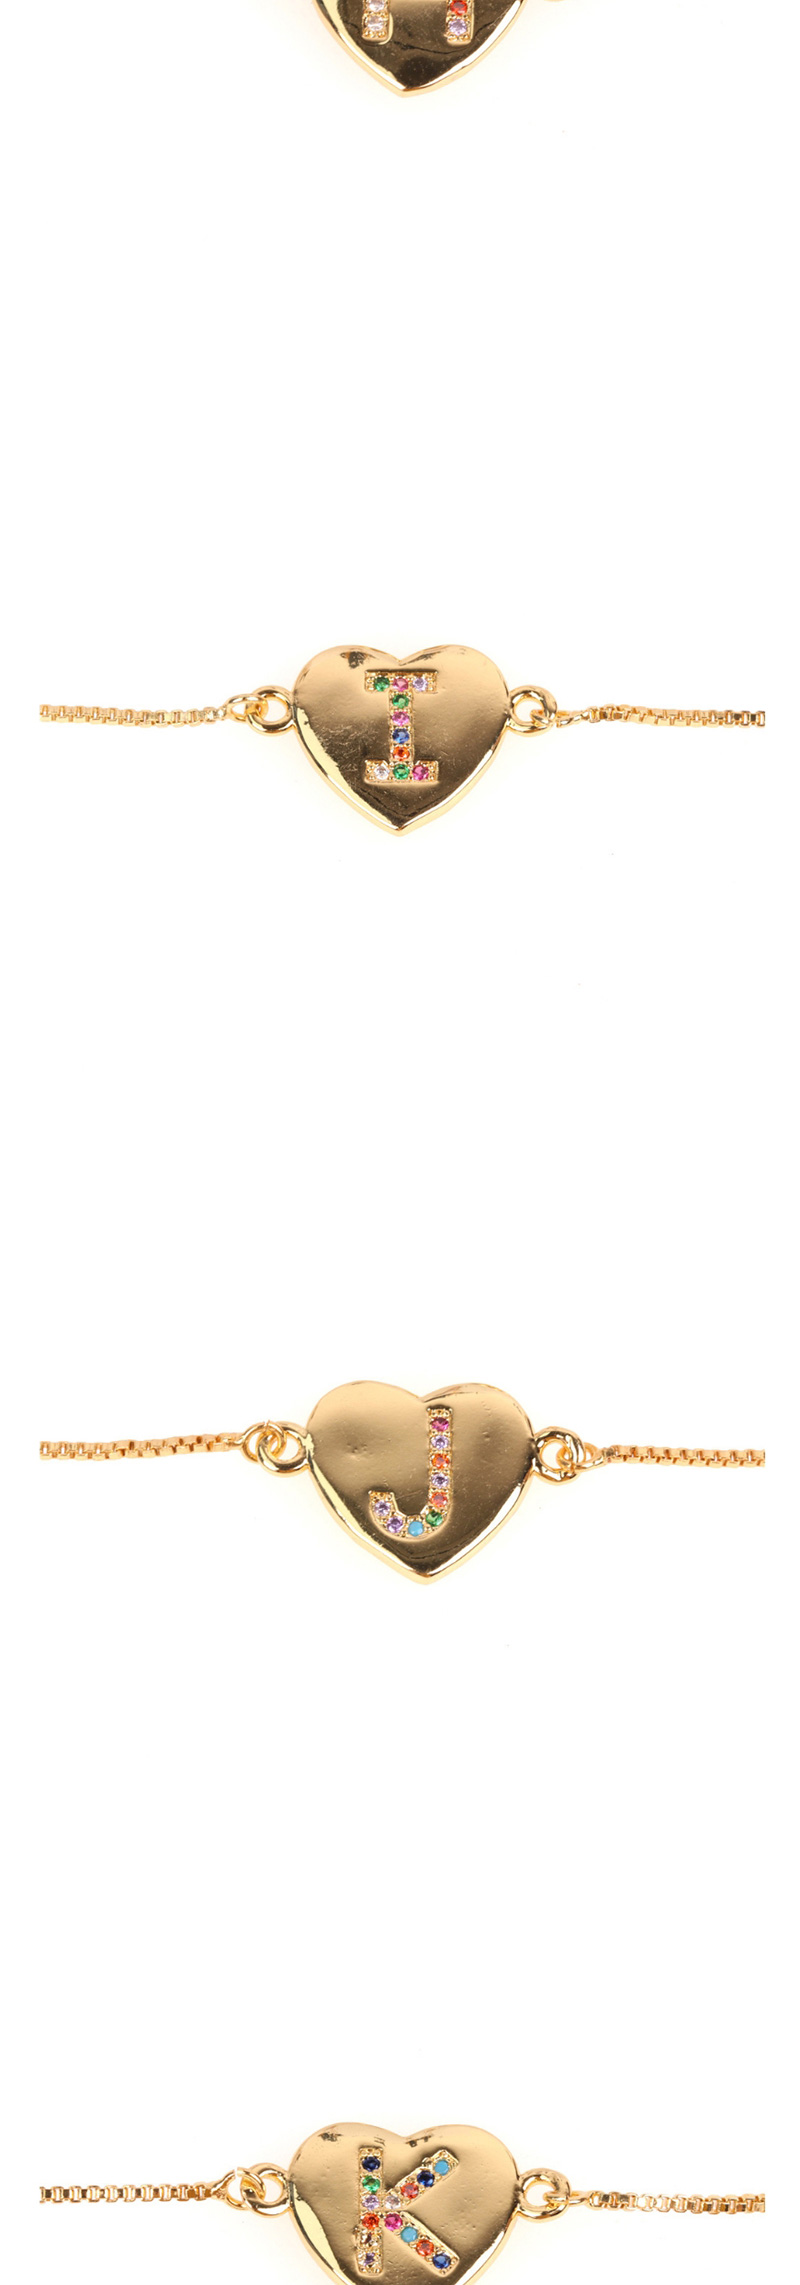 Fashion V Golden Heart Bracelet With Diamonds And Letters,Bracelets